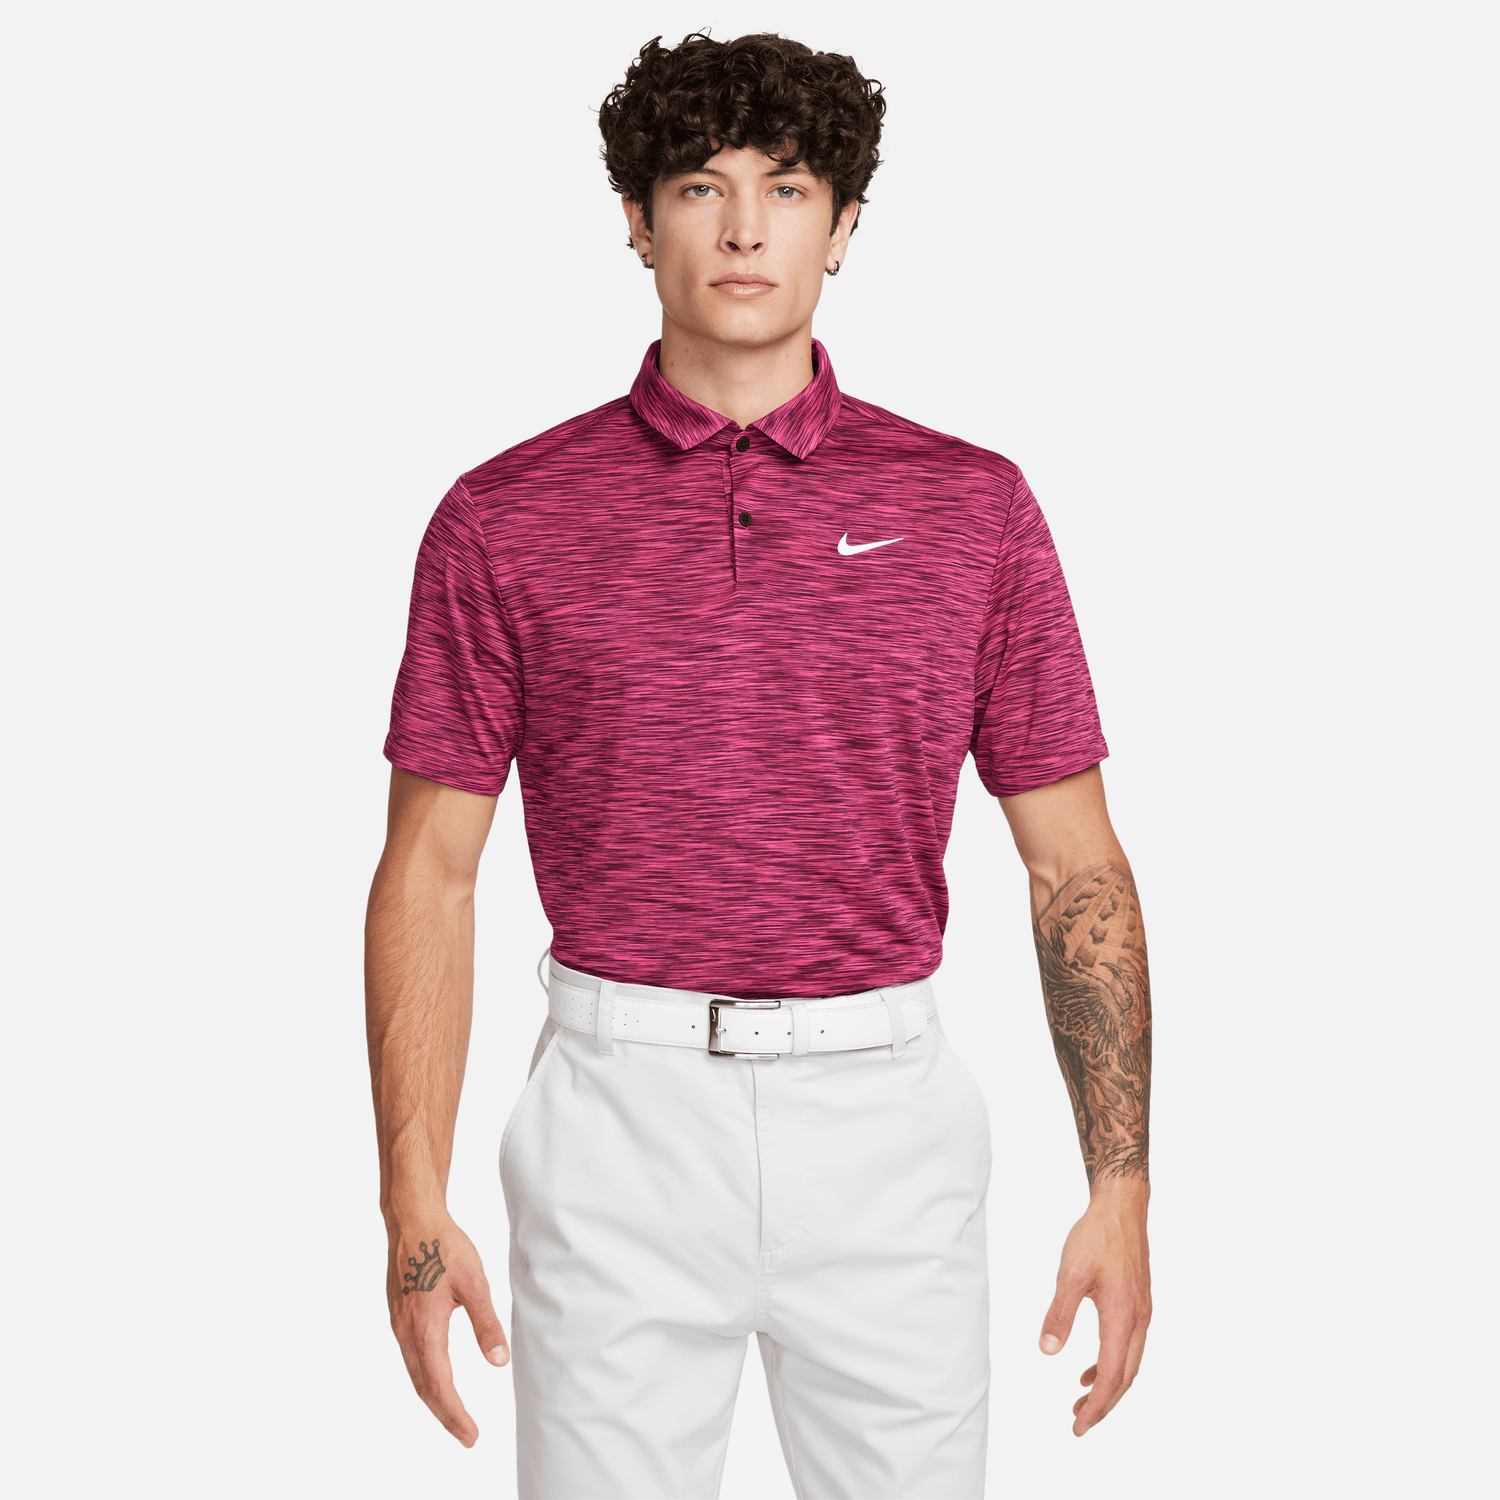 Nike Golf Dri-FIT Tour Mens Space Dye Polo Shirt DX6091 Bordeaux / Fireberry / White 610 M 